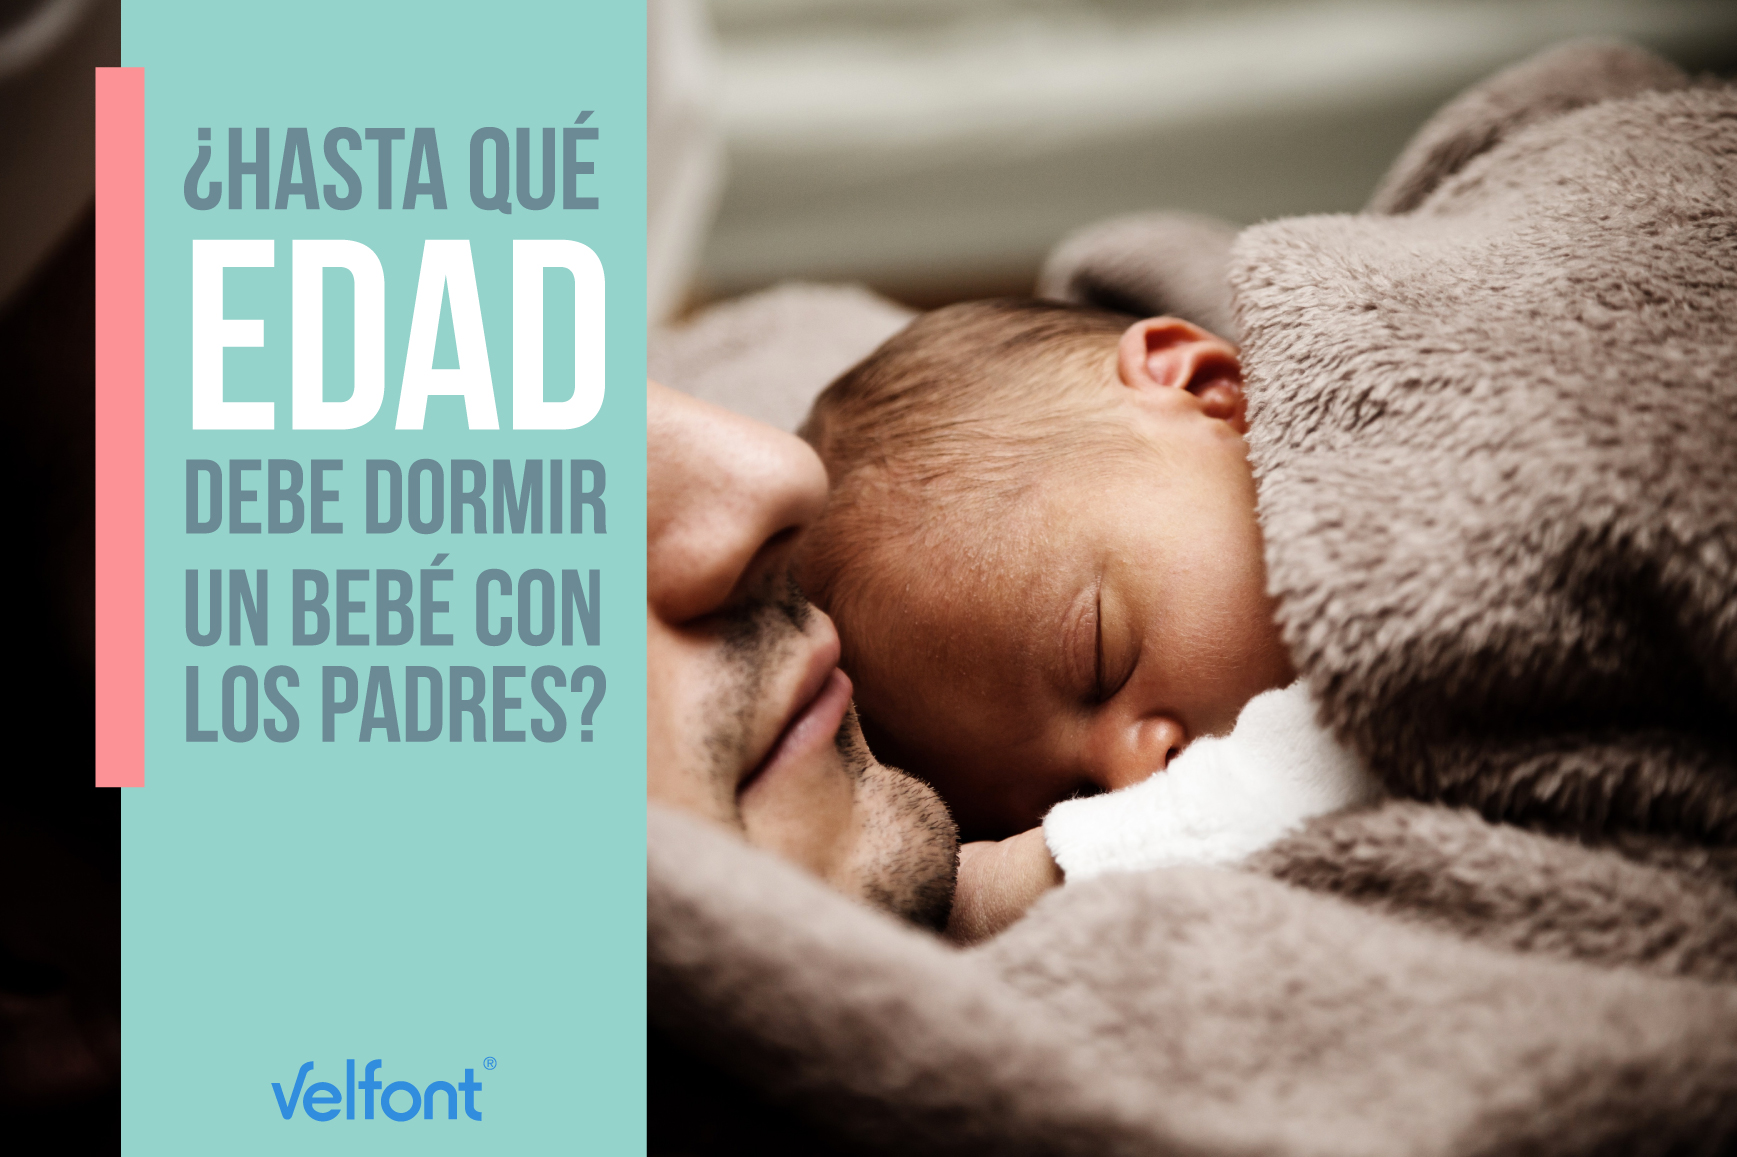 ¿Hasta qué edad debe dormir un bebé con los padres?